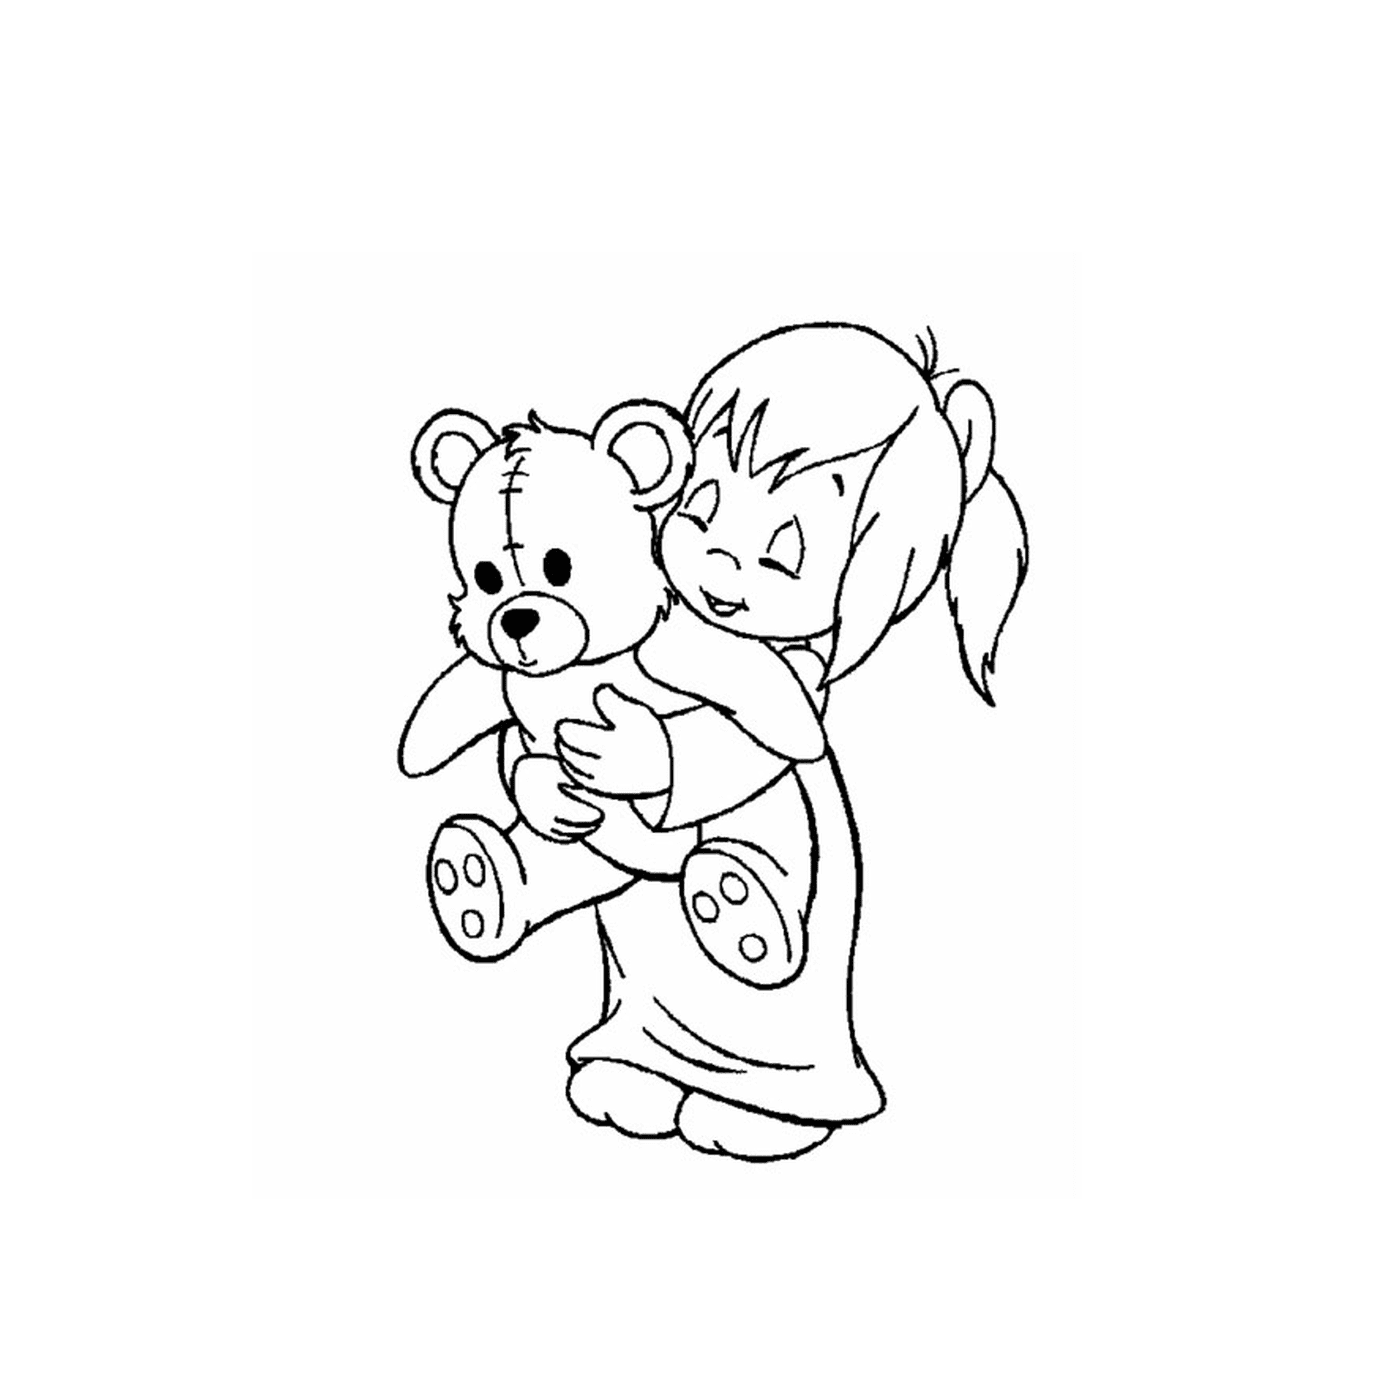  Ein kleines Mädchen, das einen Teddybär in den Armen hält 